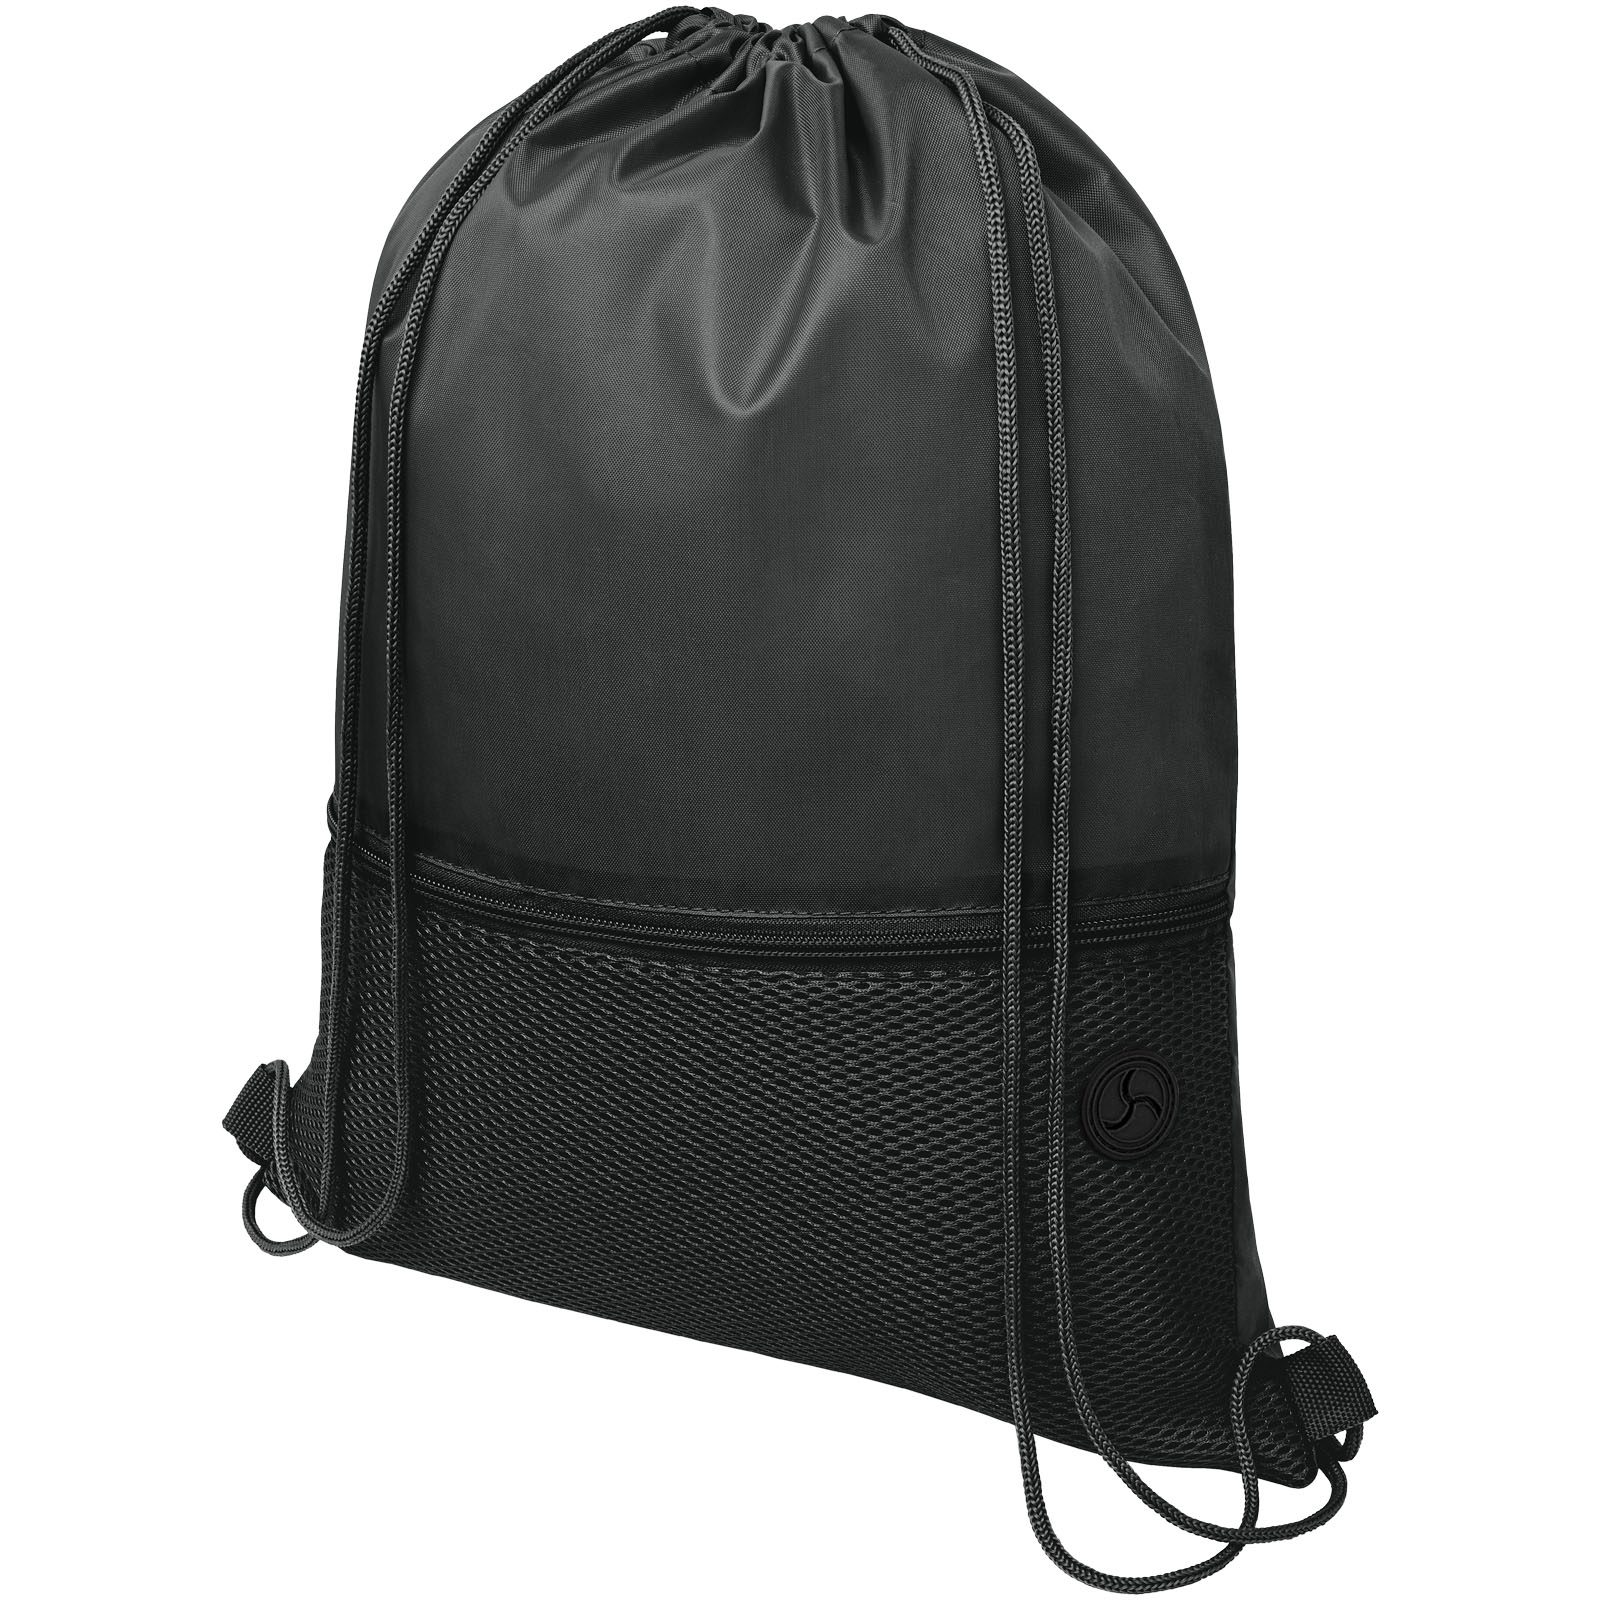 Drawstring Bags - Oriole mesh drawstring bag 5L